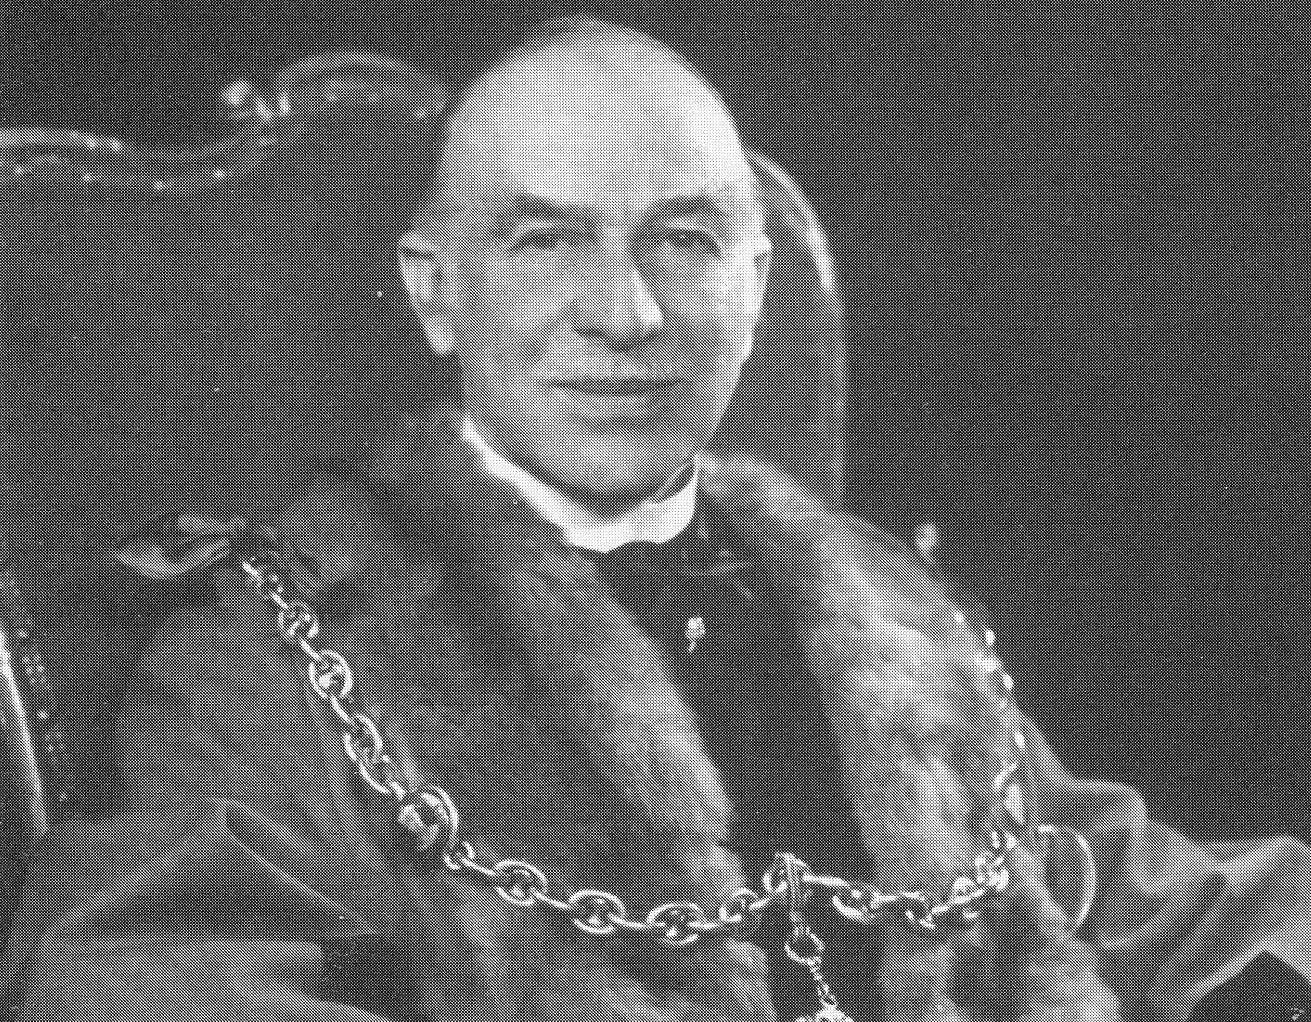 Sir Garrard Tyrwhitt-Drake, town benefactor and 12 times Maidstone Mayor